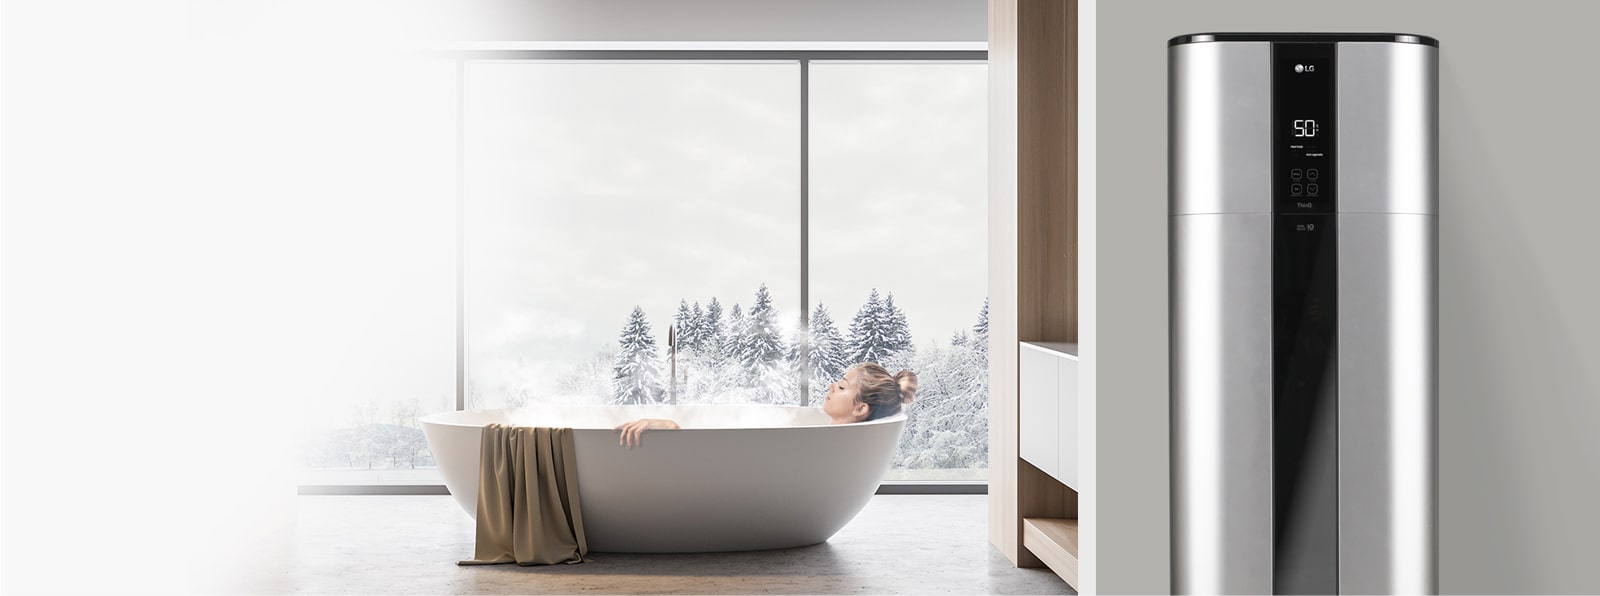 Élvezze a relaxáló fürdőt a csendes vízmelegítővel